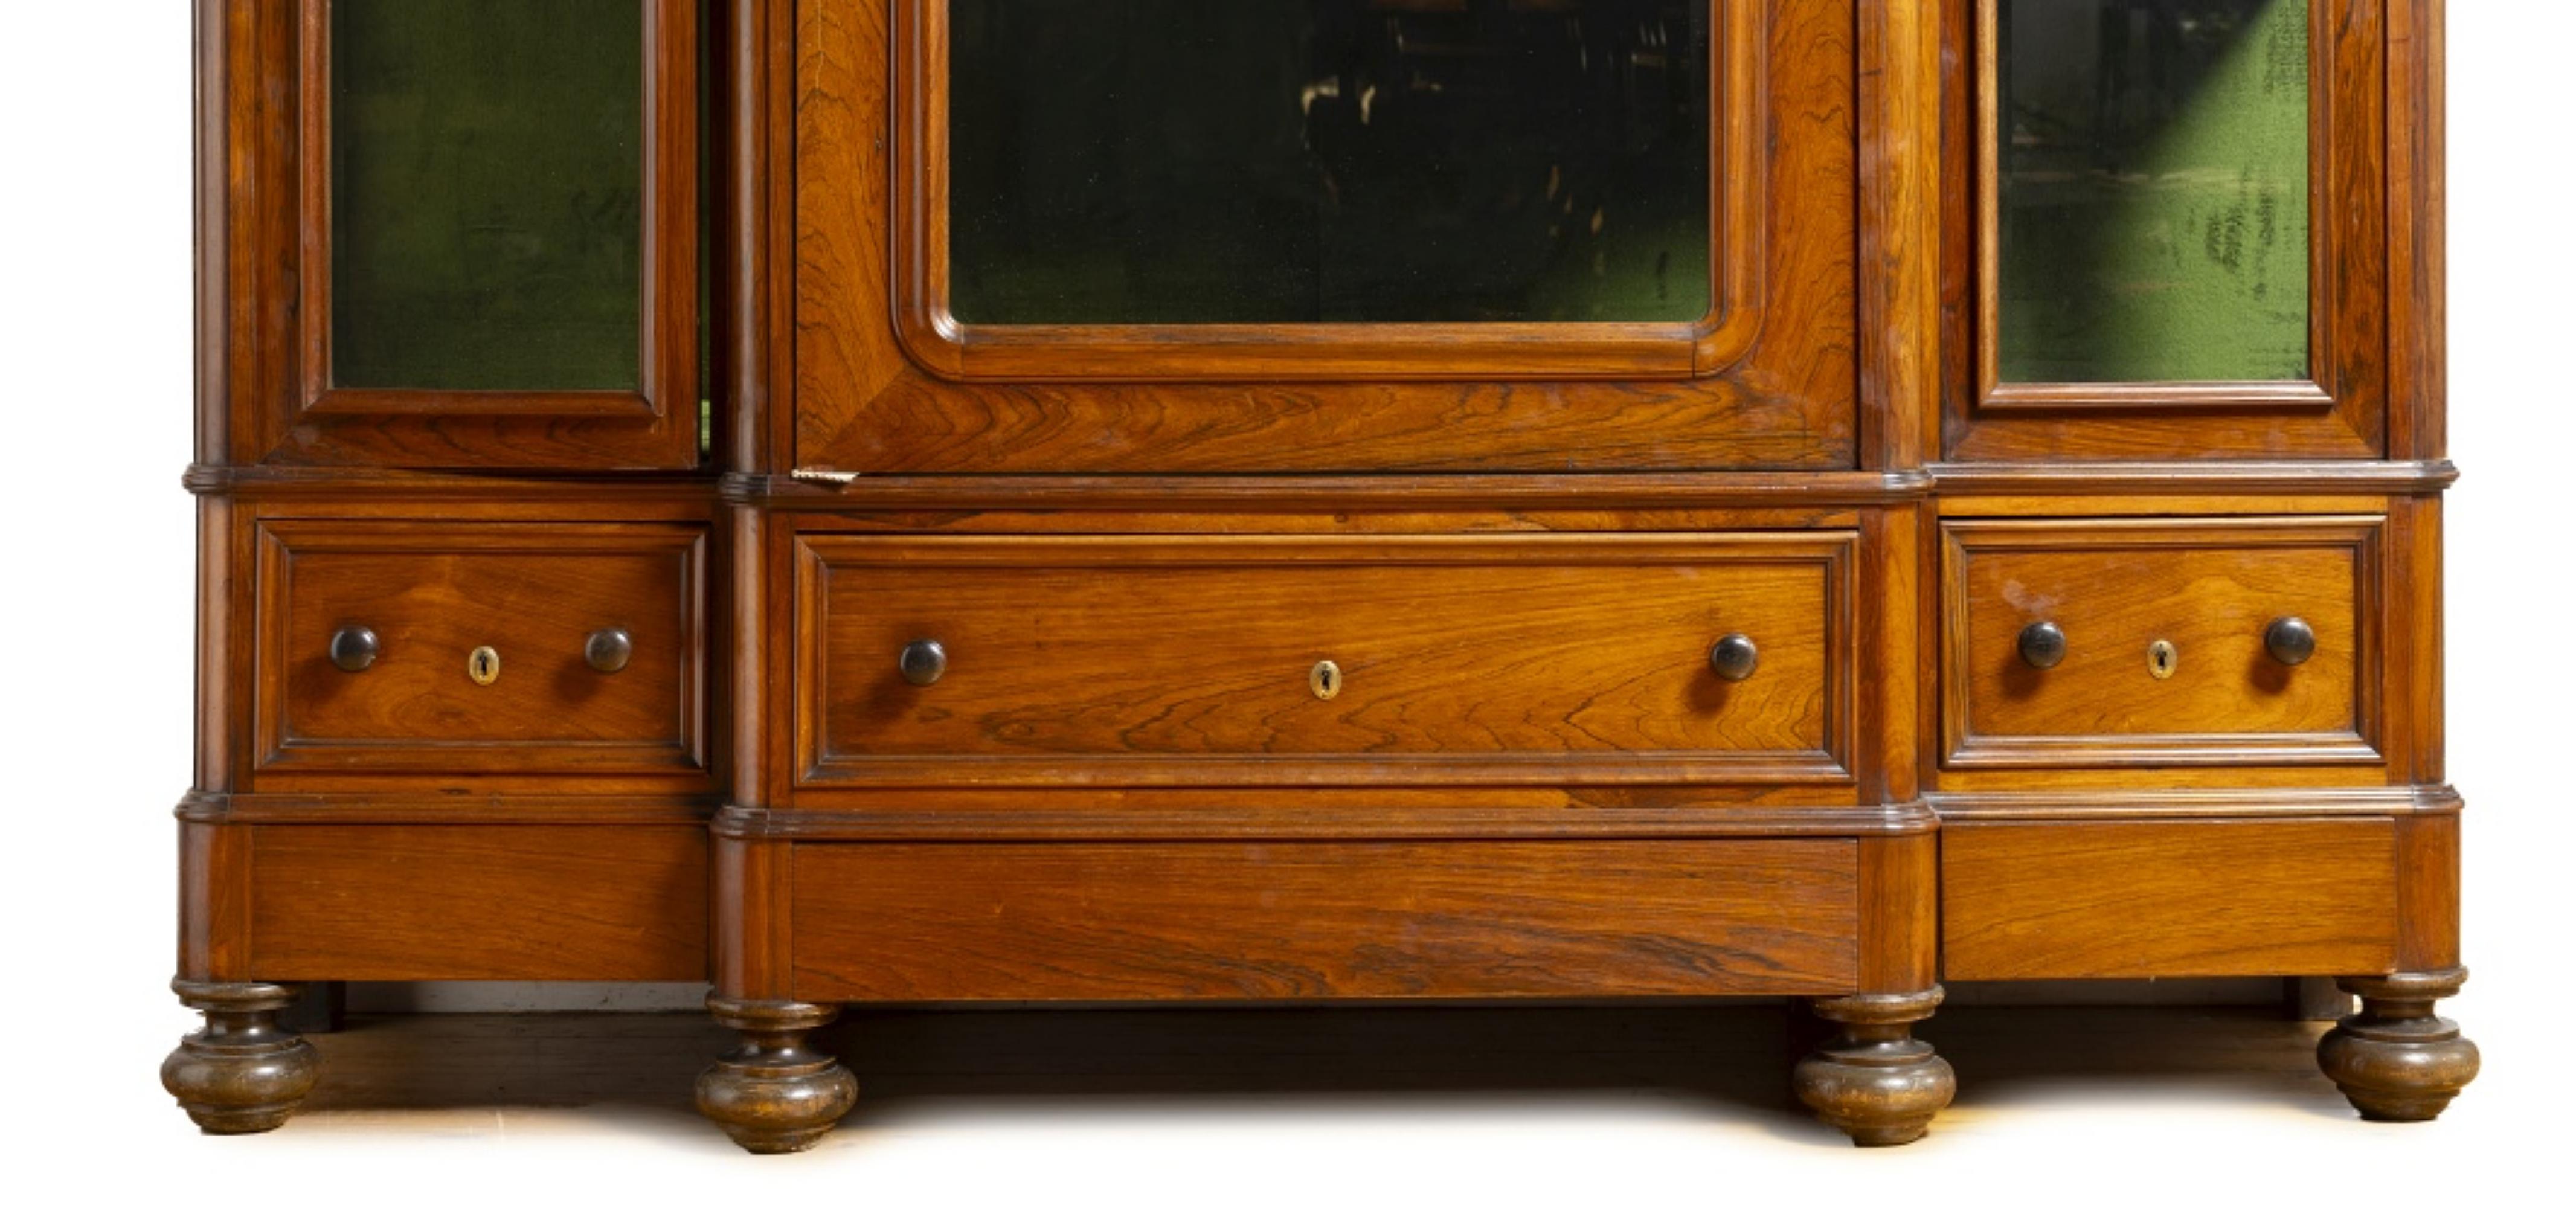 GROSSER AUSSTELLUNGSKABINETT 19. Jahrhundert

Palisanderholz
mit drei Türen, Glasseiten und drei Schubladen. Innen mit zwei mit grünem Samt bezogenen Regalen.
Abmessung: 235 x 191 x 60 cm
gute Bedingungen